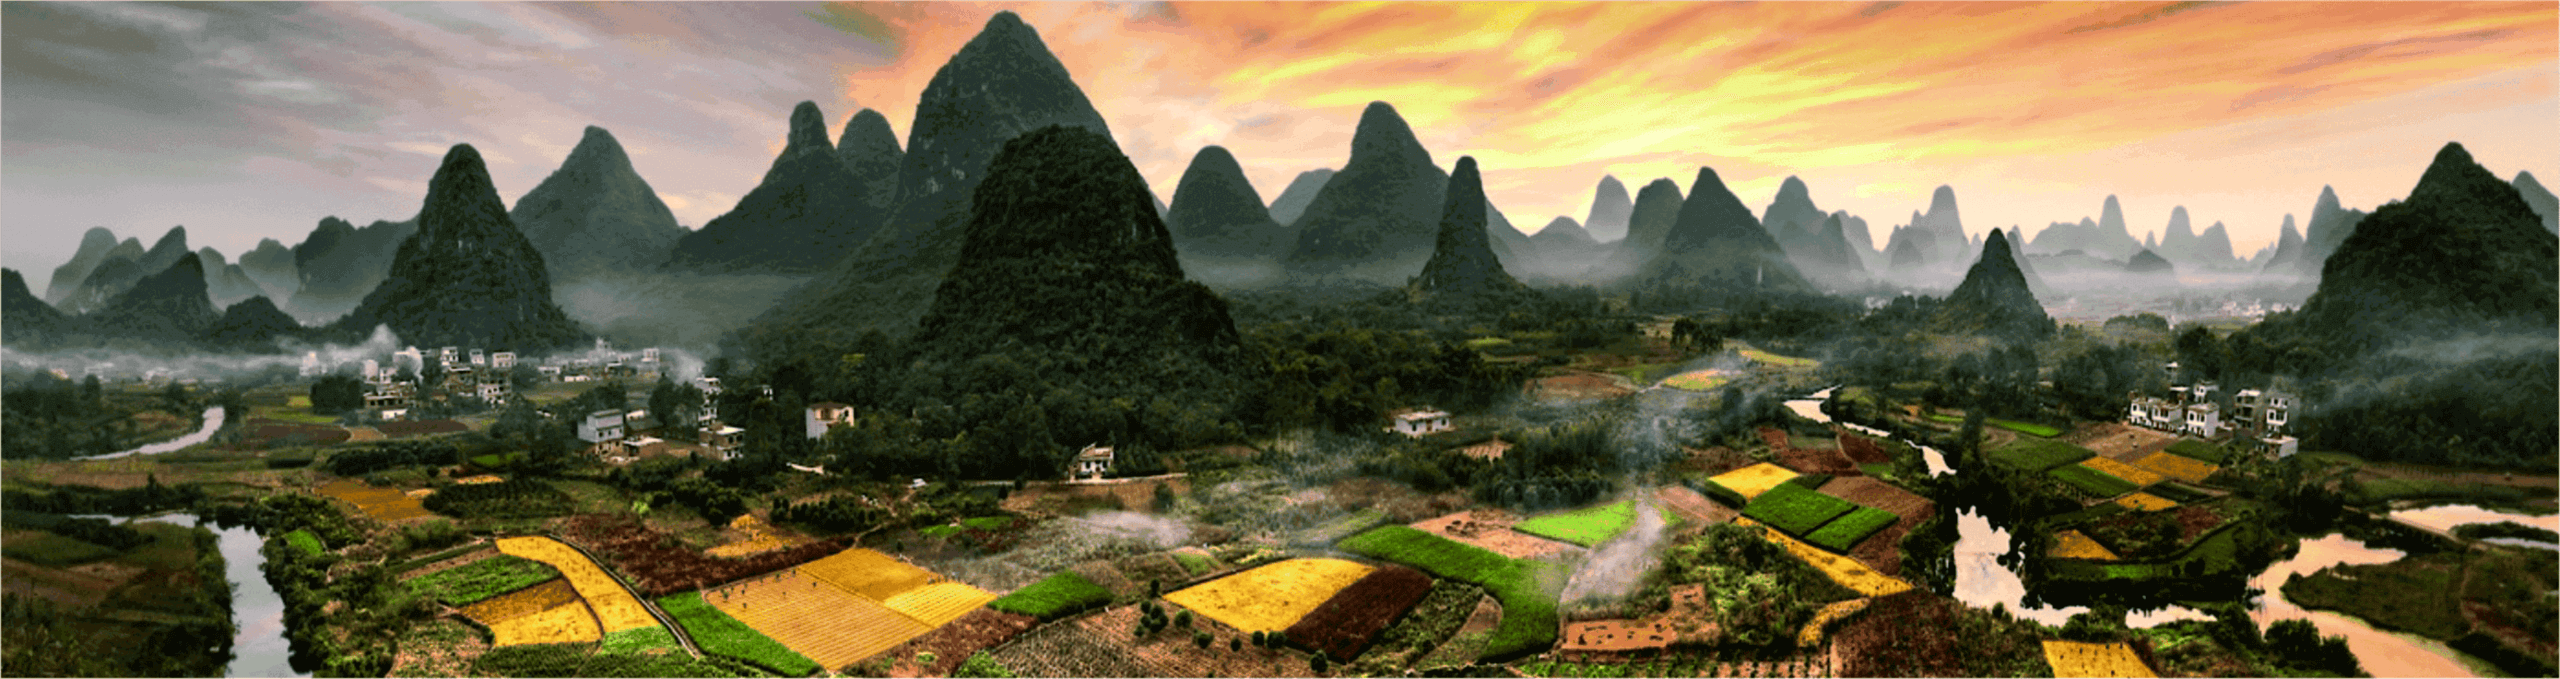 Kultur- und Asienreise Eine Luftaufnahme eines asiatischen Dorfes mit Bergen im Hintergrund in China.